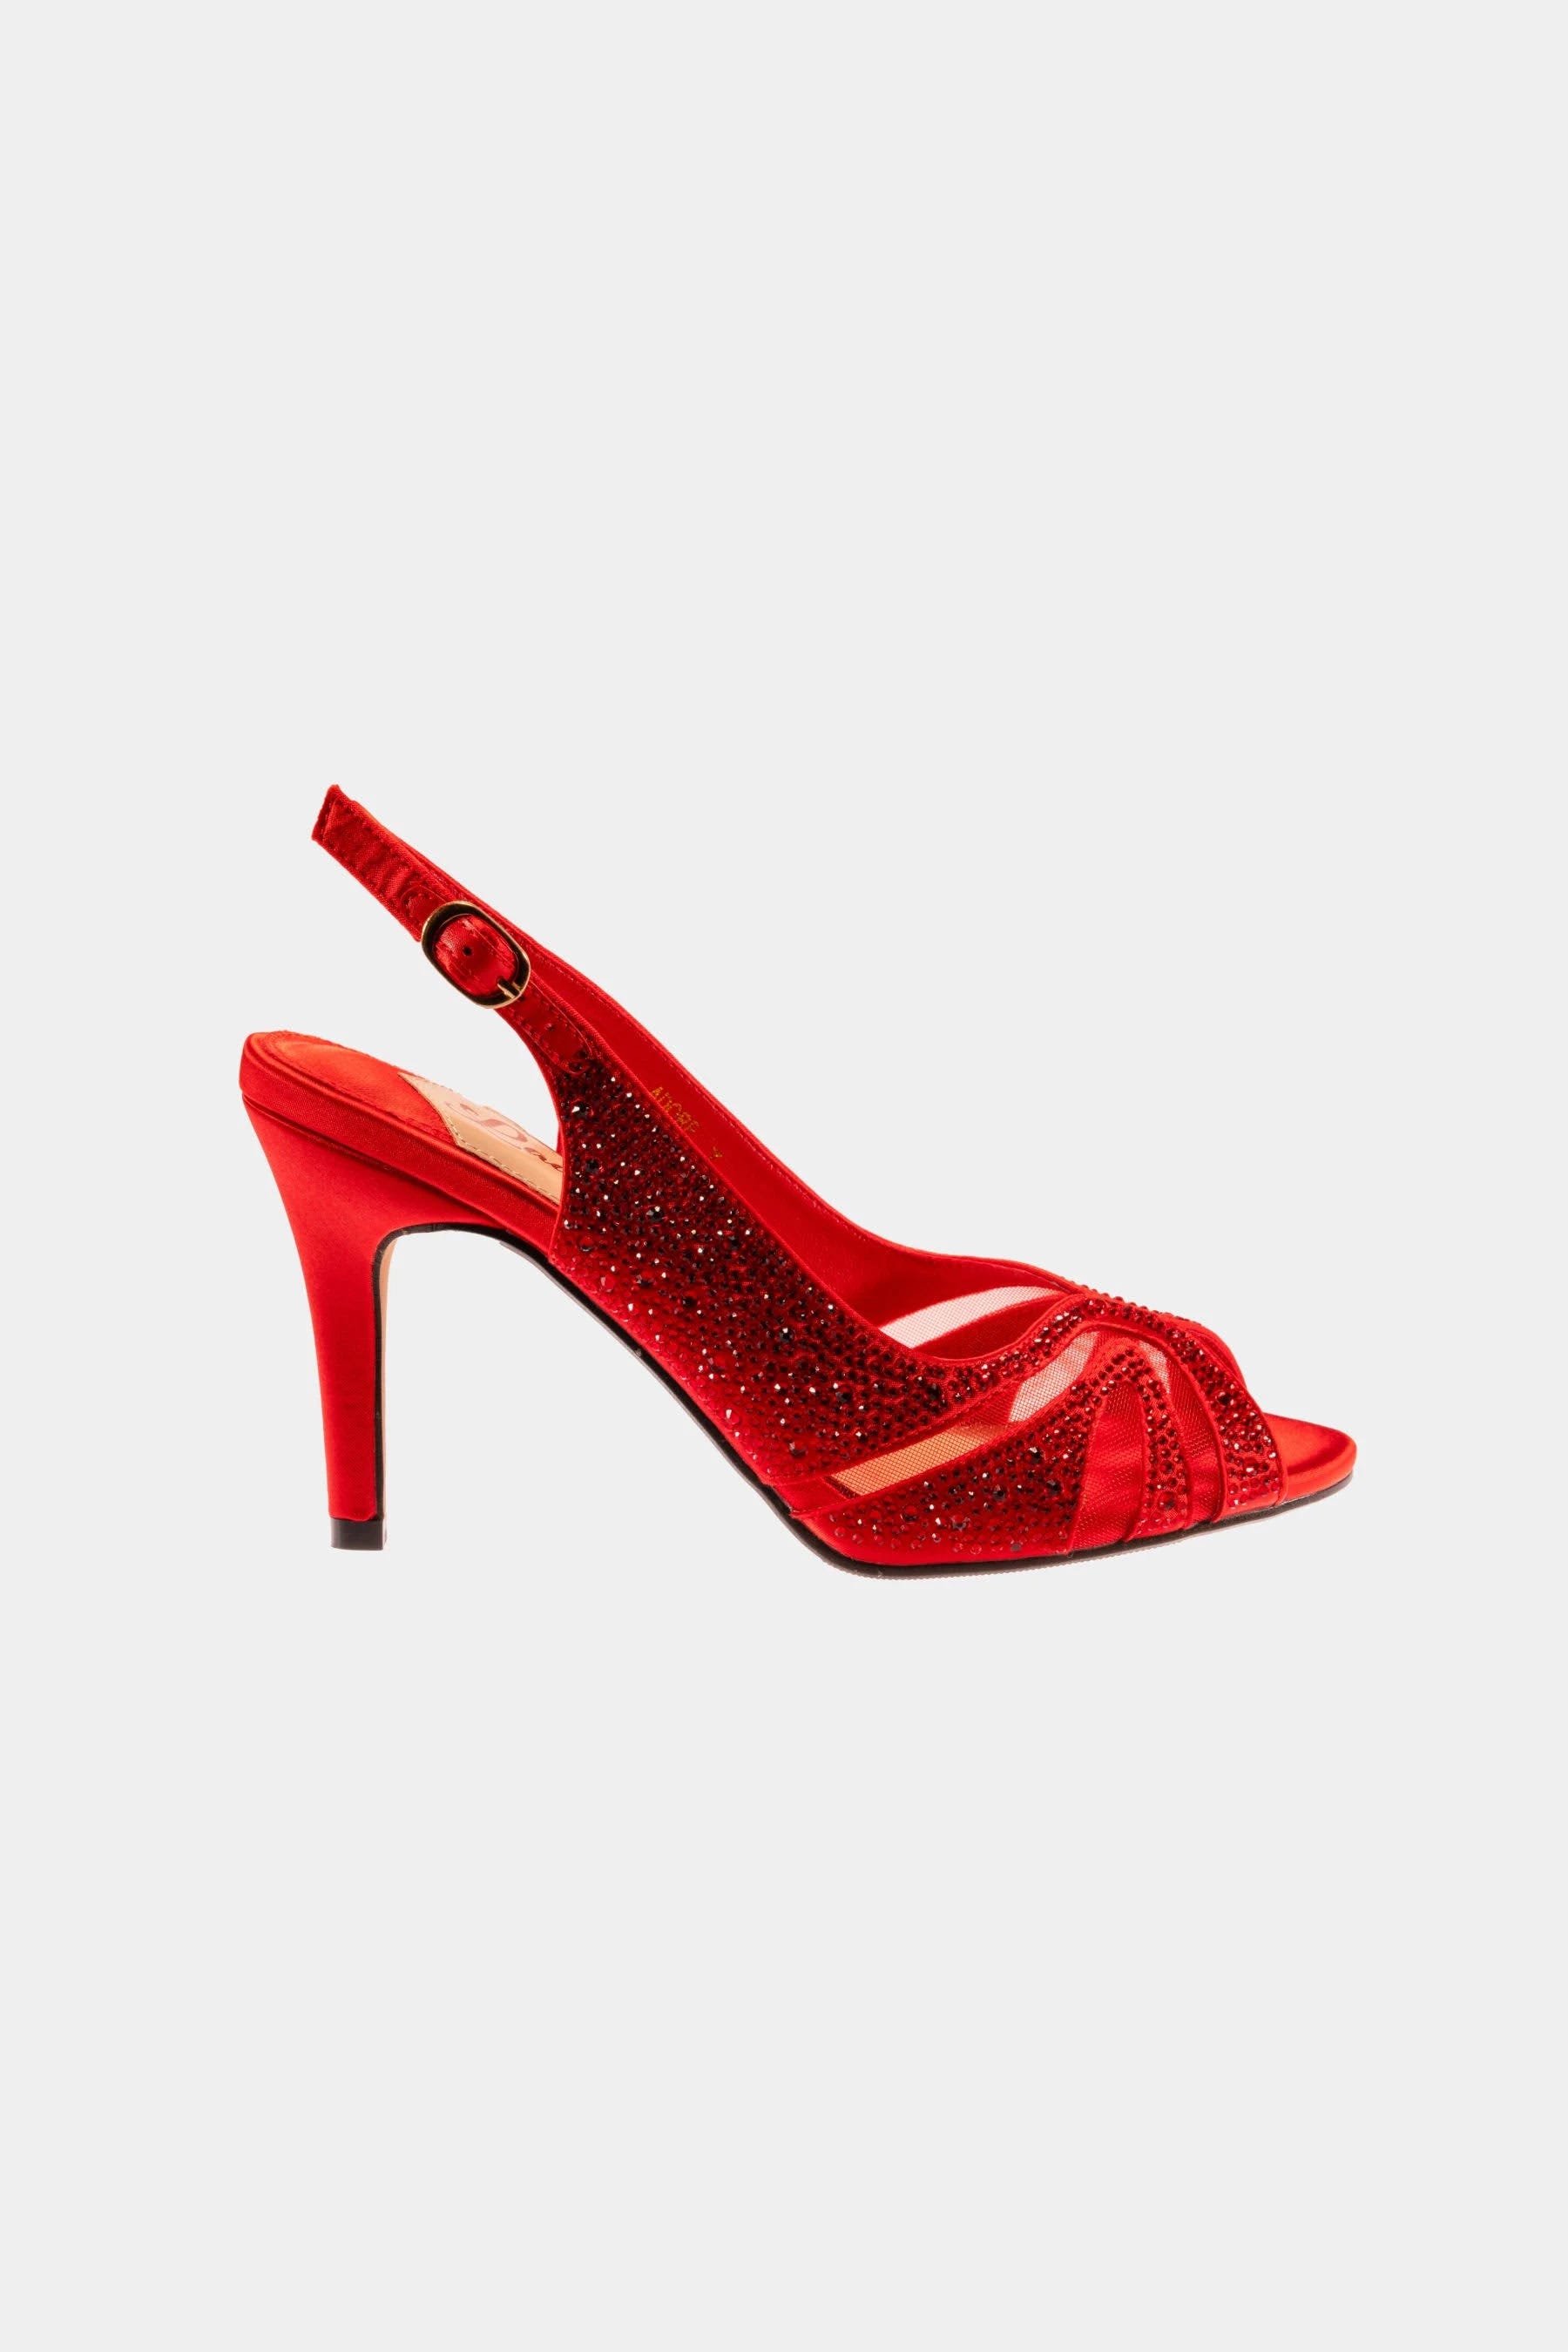 Stylish Metallic Red Heel Slingback Sandals | Image